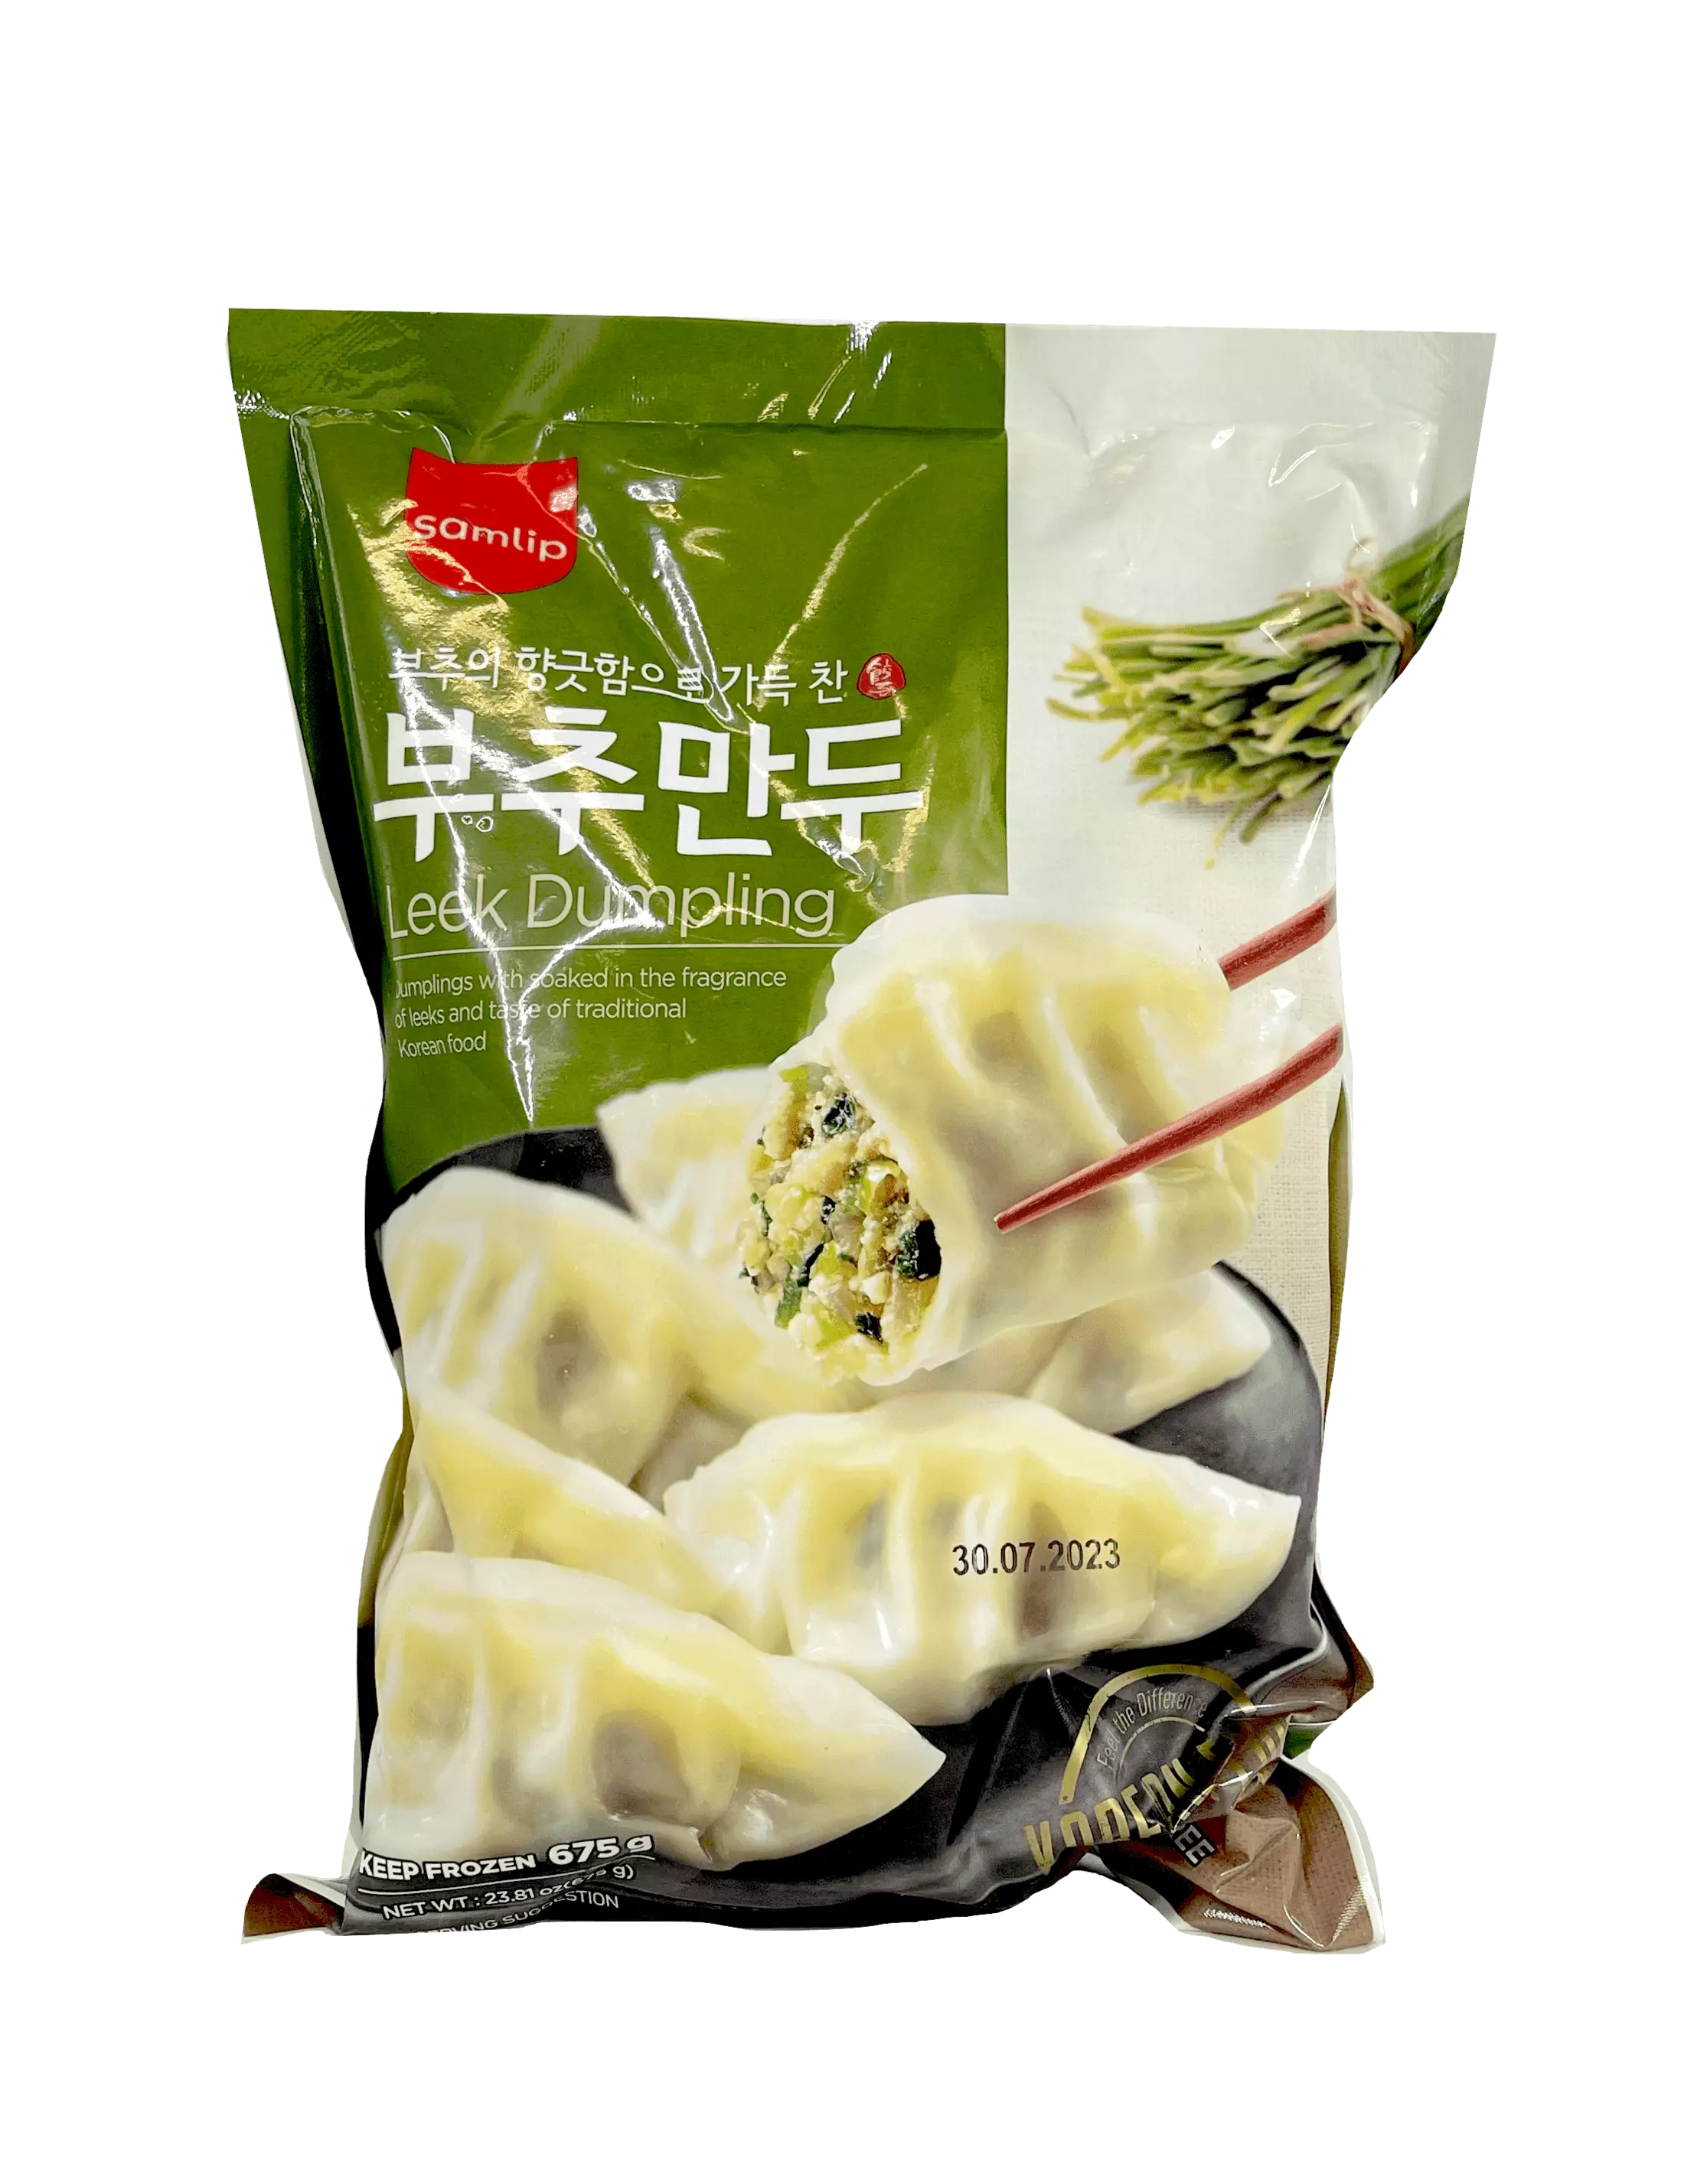 Dumpling Chives 675g Samlip Korean